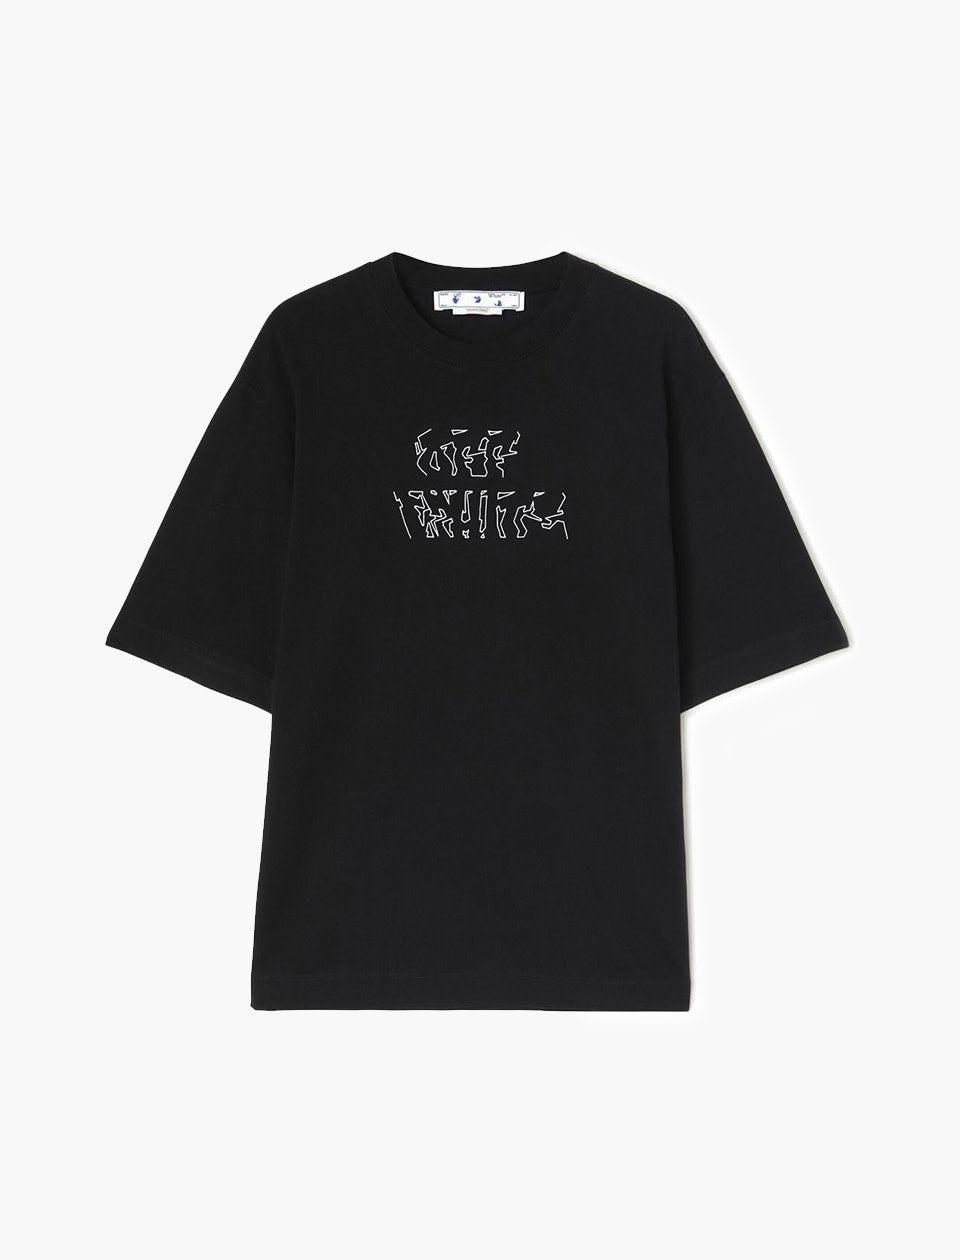 Off White Neen Arrow Skate S/S T-shirt ( Black )